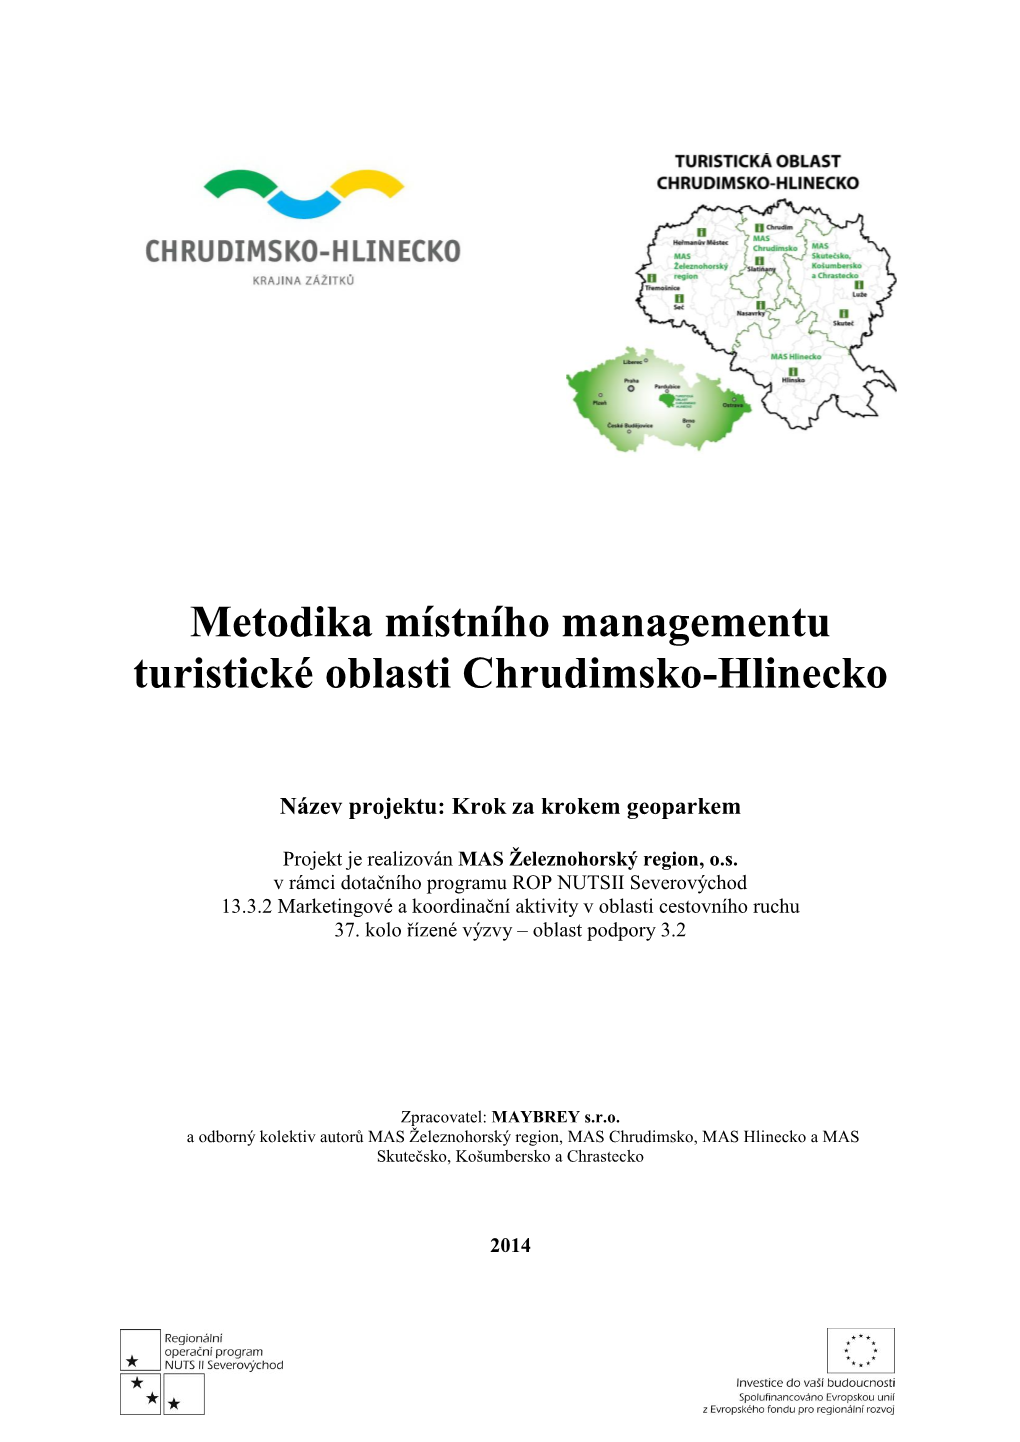 Metodika Místního Managementu Turistické Oblasti Chrudimsko-Hlinecko